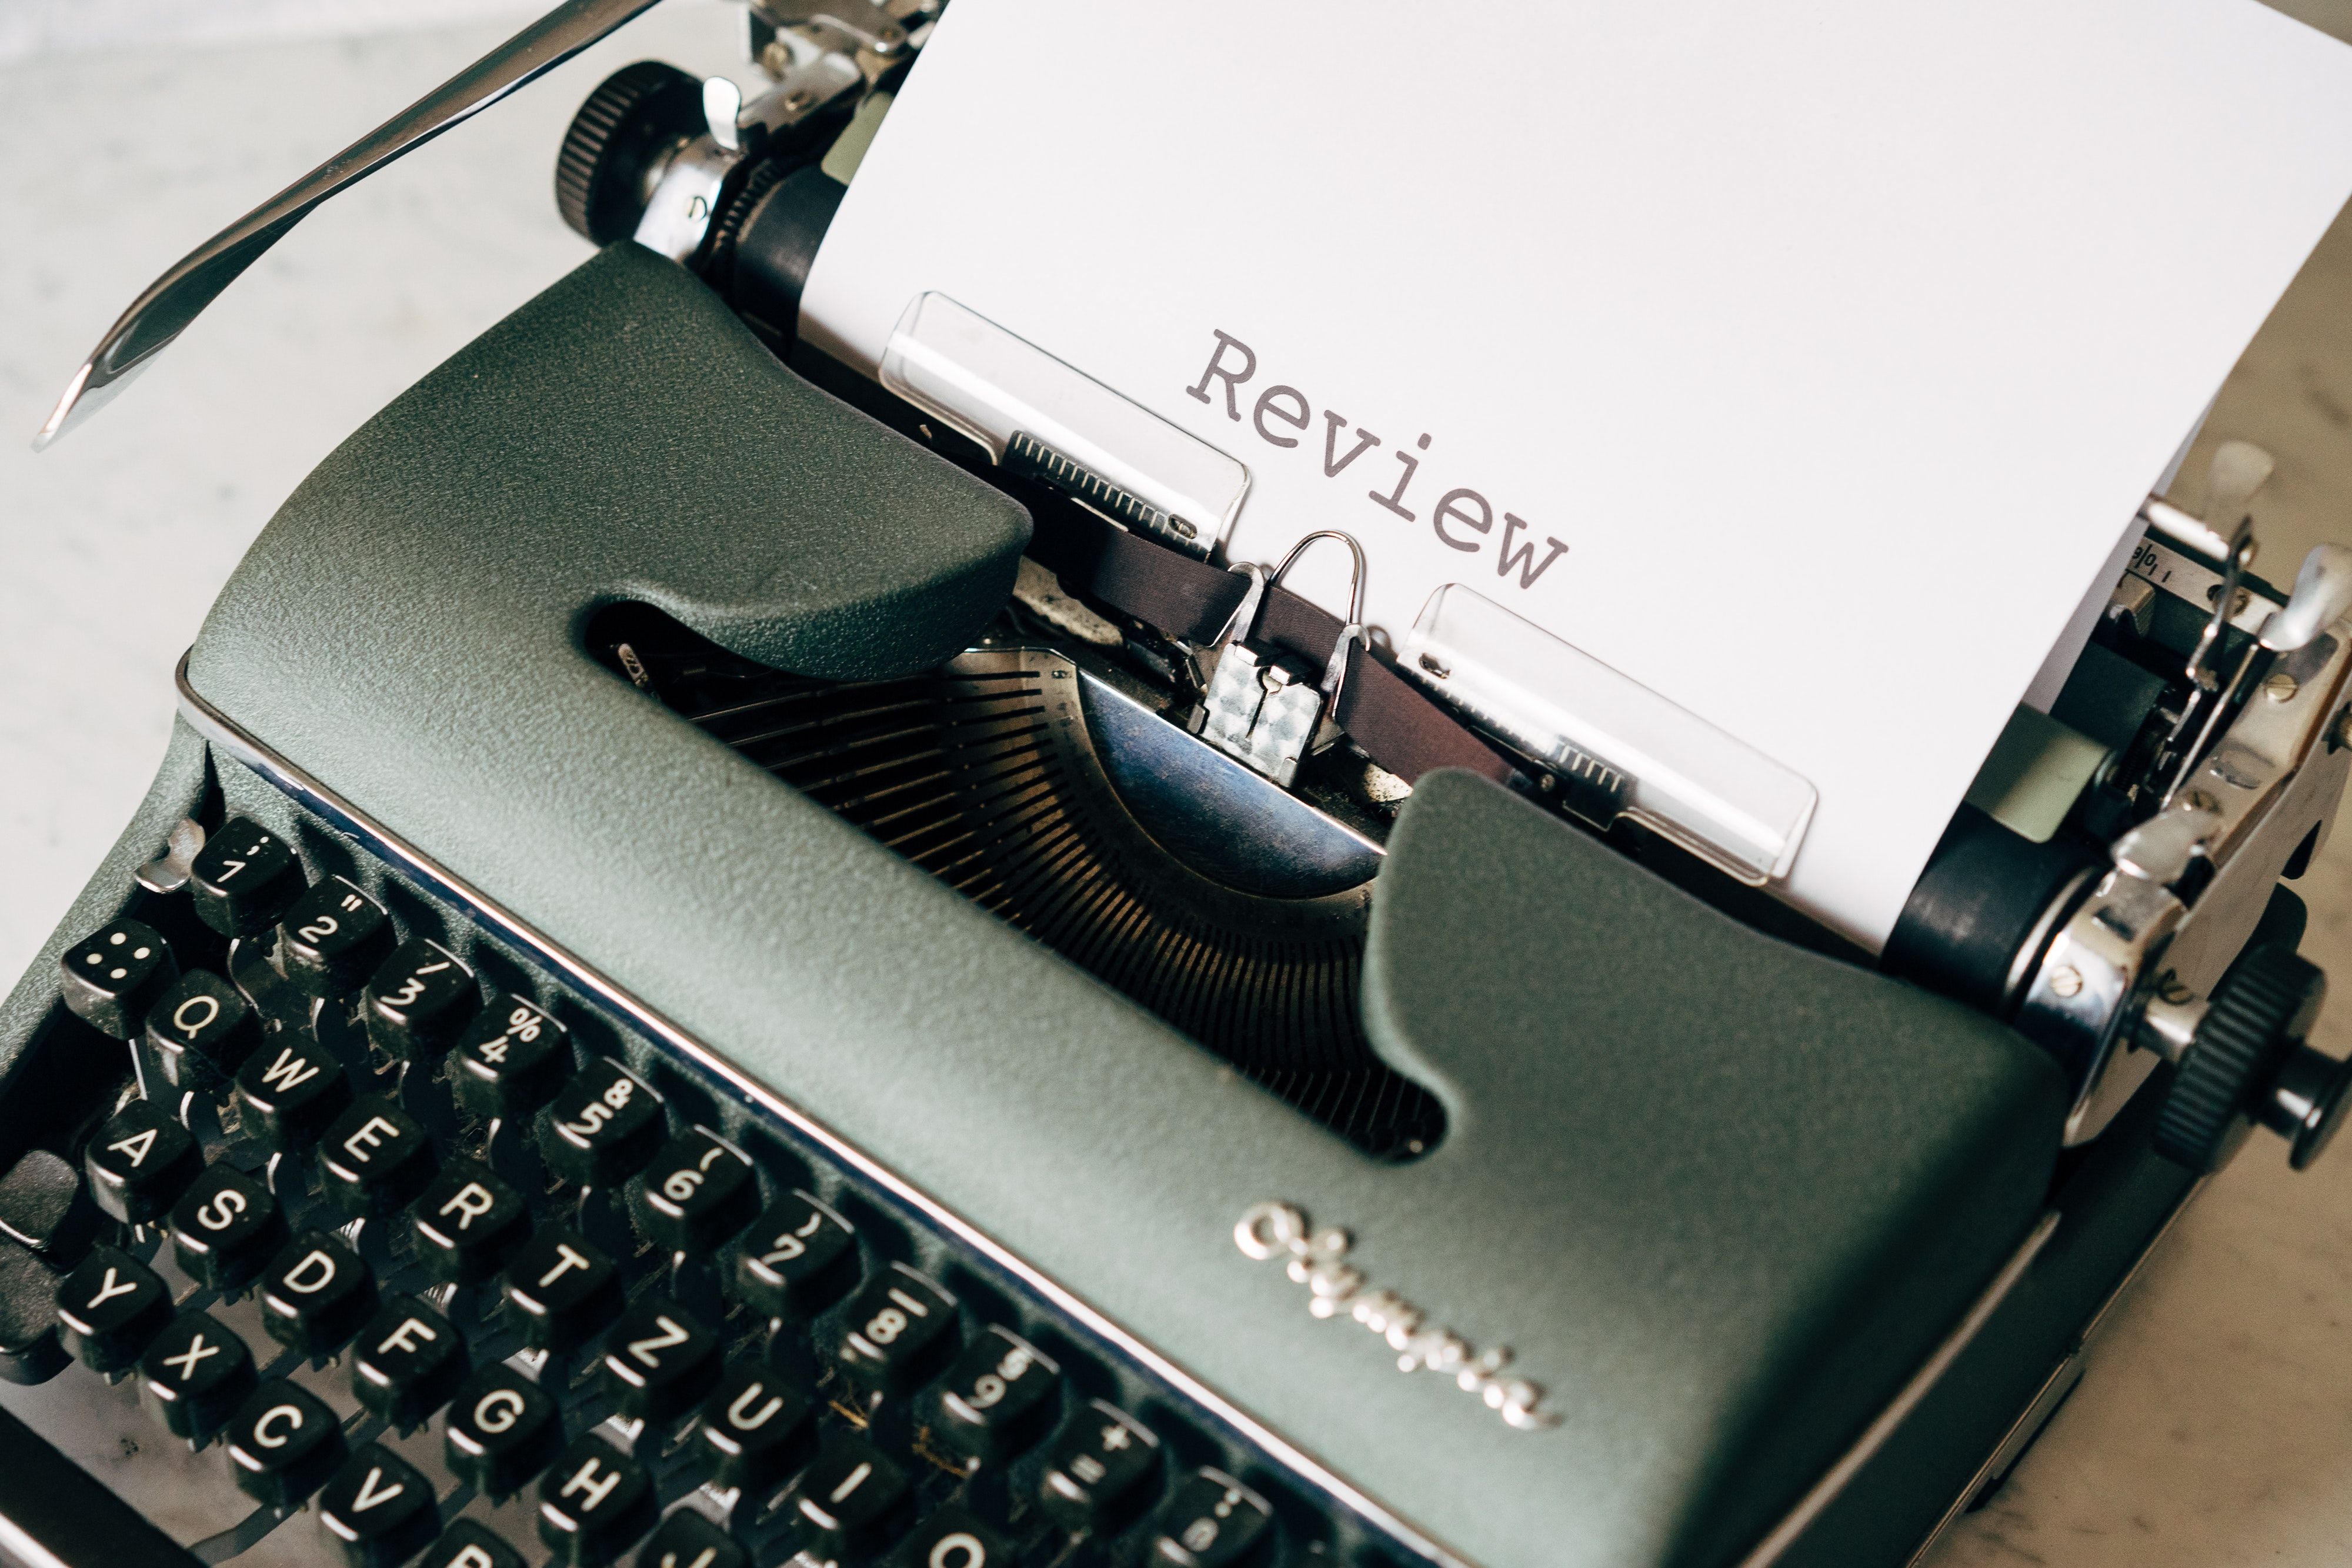 Photo of typewriter